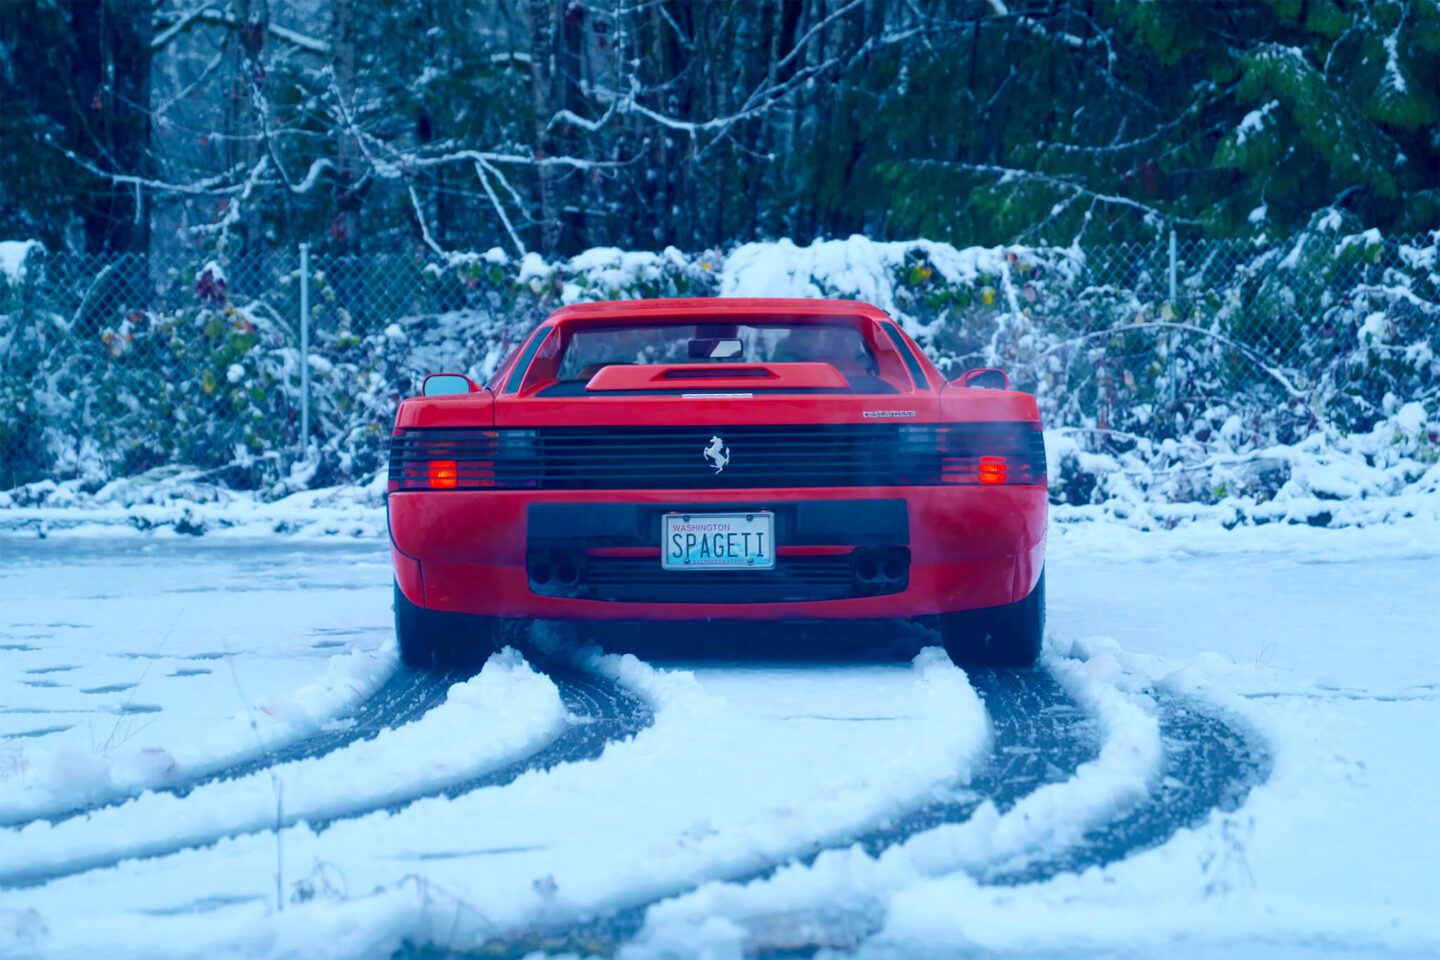 Ferrari Testarossa de traseira